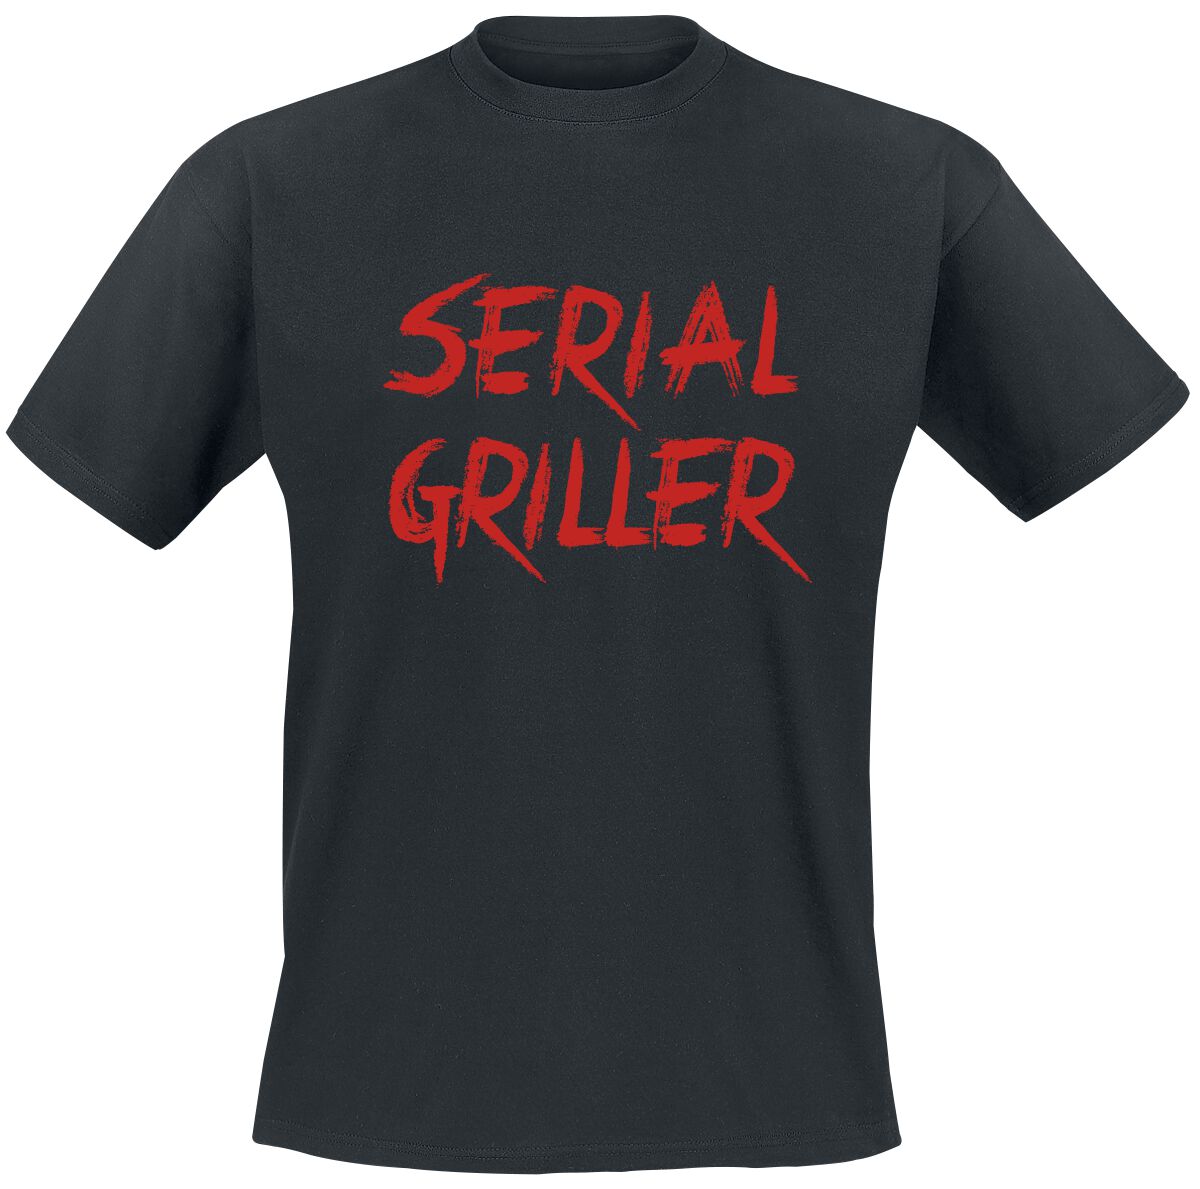 Food T-Shirt - Serial Griller - S bis 5XL - für Männer - Größe 4XL - schwarz